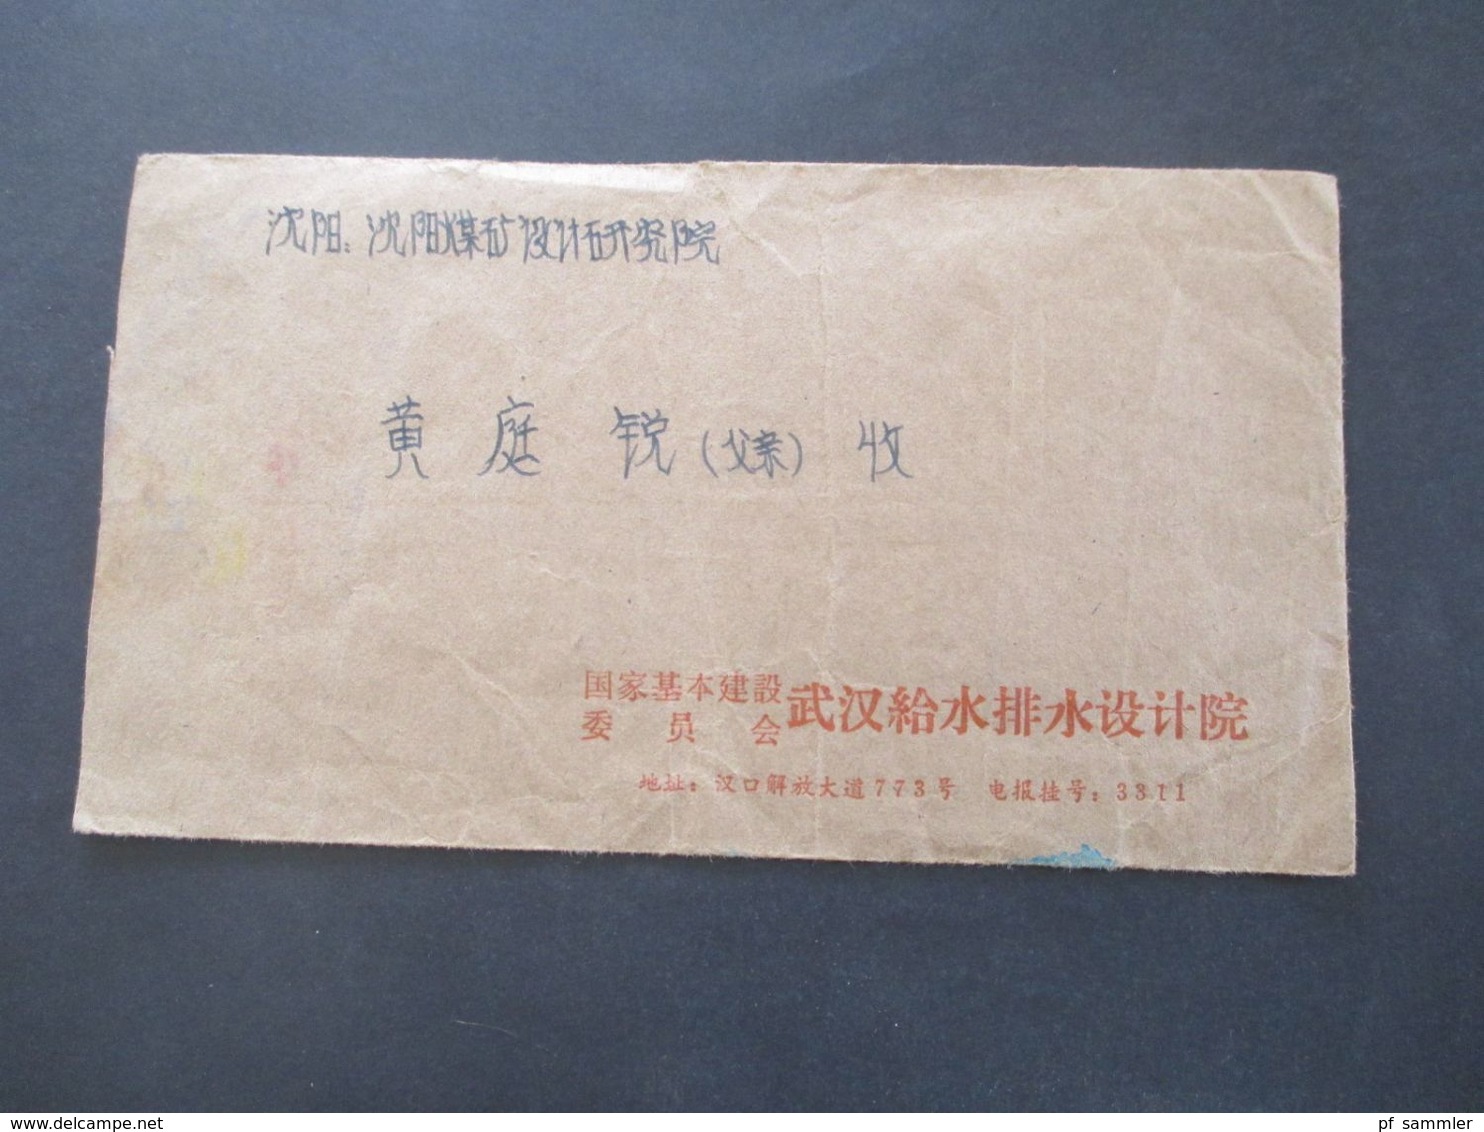 VR China 1970er Jahre Belege Posten 20 Stk. Freimarken Industrie und Landwirtschaft. teilweise mit Inhalt